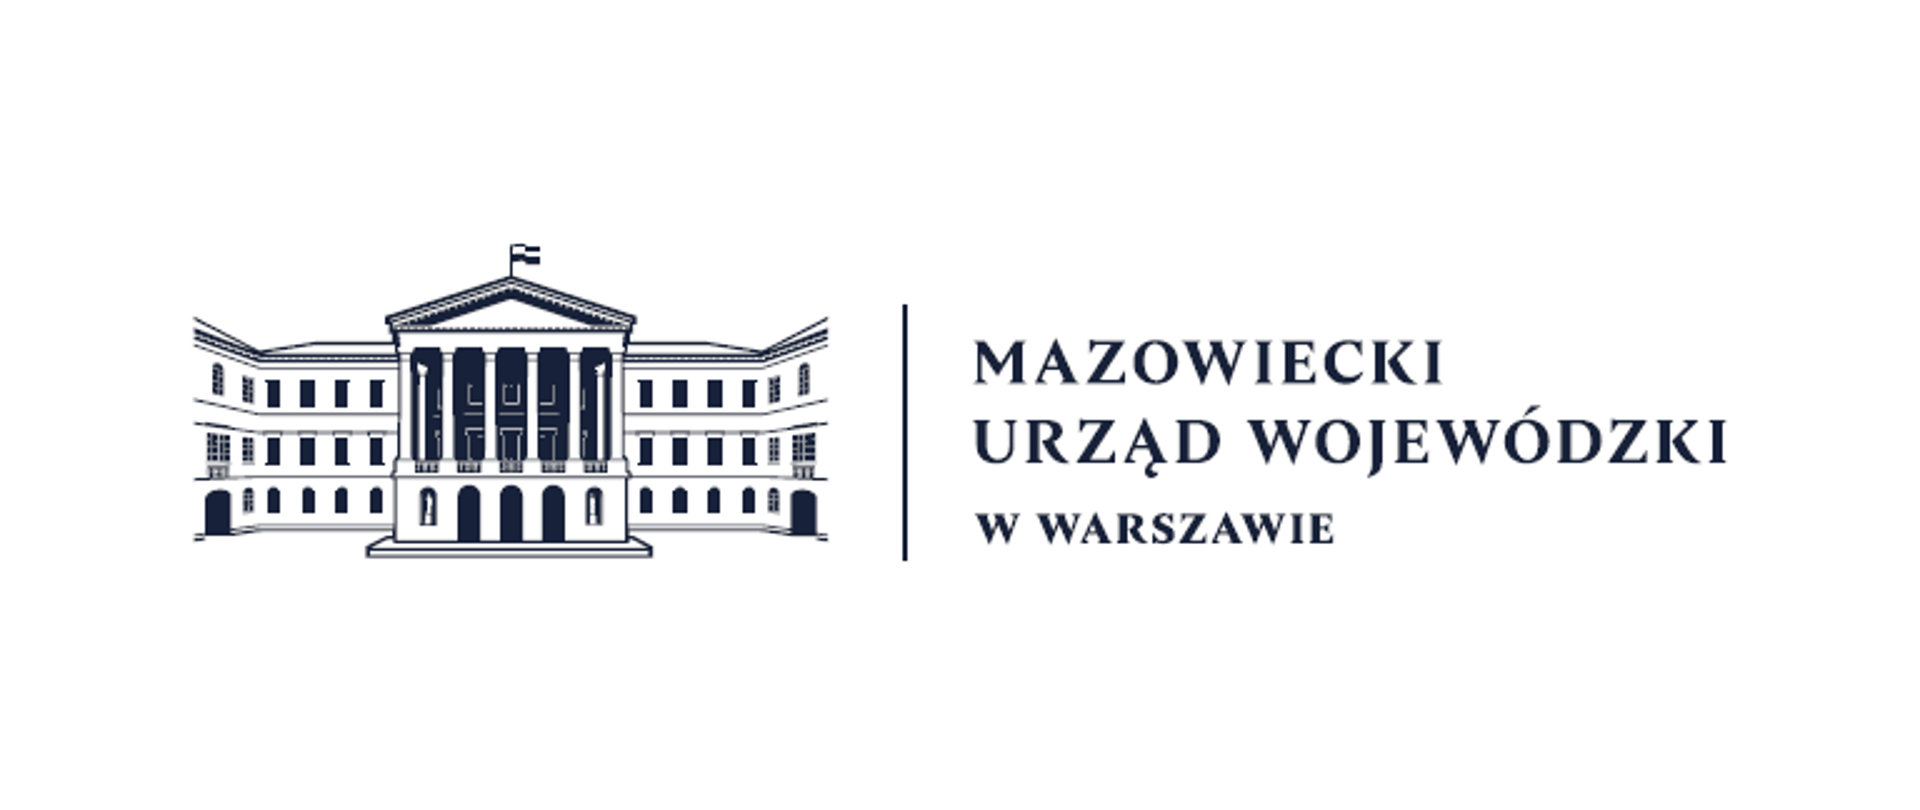 Grafika przestawia logo Mazowieckiego Urzędu Wojewódzkiego w Warszawie (granatowy logotyp na białym tle). Logo przedstawione zostało w poziomie: po lewej stronie znajduje się fragment gmachu siedziby urzędu, po prawej stronie napis "Mazowiecki Urząd Wojewódzki w Warszawie. 